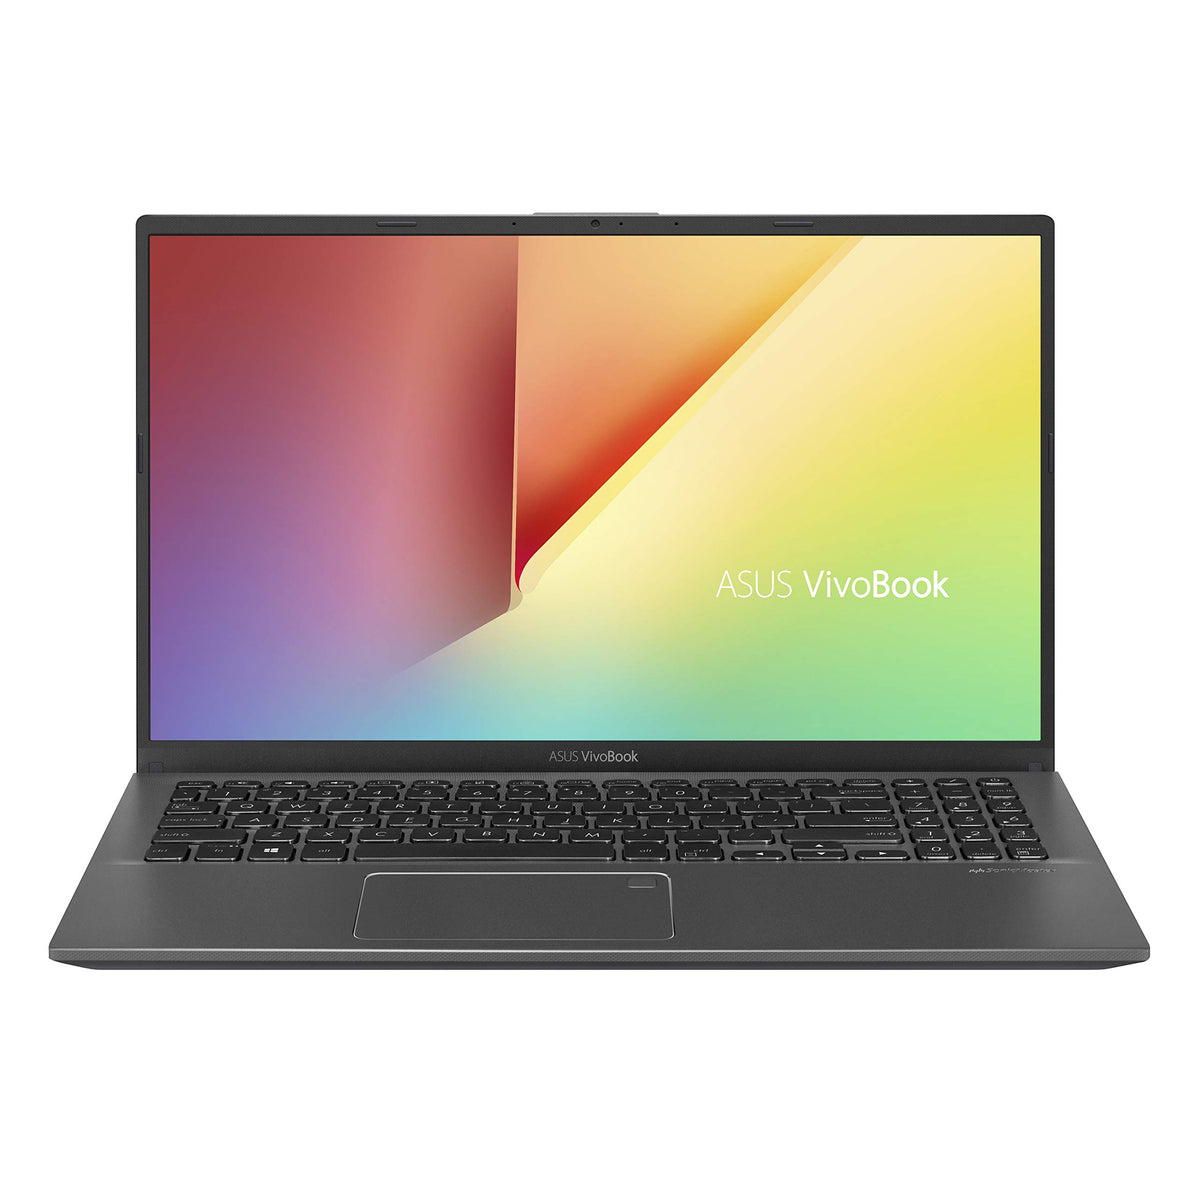 ASUS VivoBook F512 Thin & Light Laptop, 15.6ÃƒÆ’Ã‚Â¢ÃƒÂ¢Ã¢â‚¬Å¡Ã‚Â¬Ãƒâ€šÃ‚Â FHD NanoEdge WideView, AMD R5-3500U, 8GB DDR4, 128G SSD + 1TB HDD, Backlit KB, Fingerprint, Windows 10, Slate Grey, F512DA-EB55